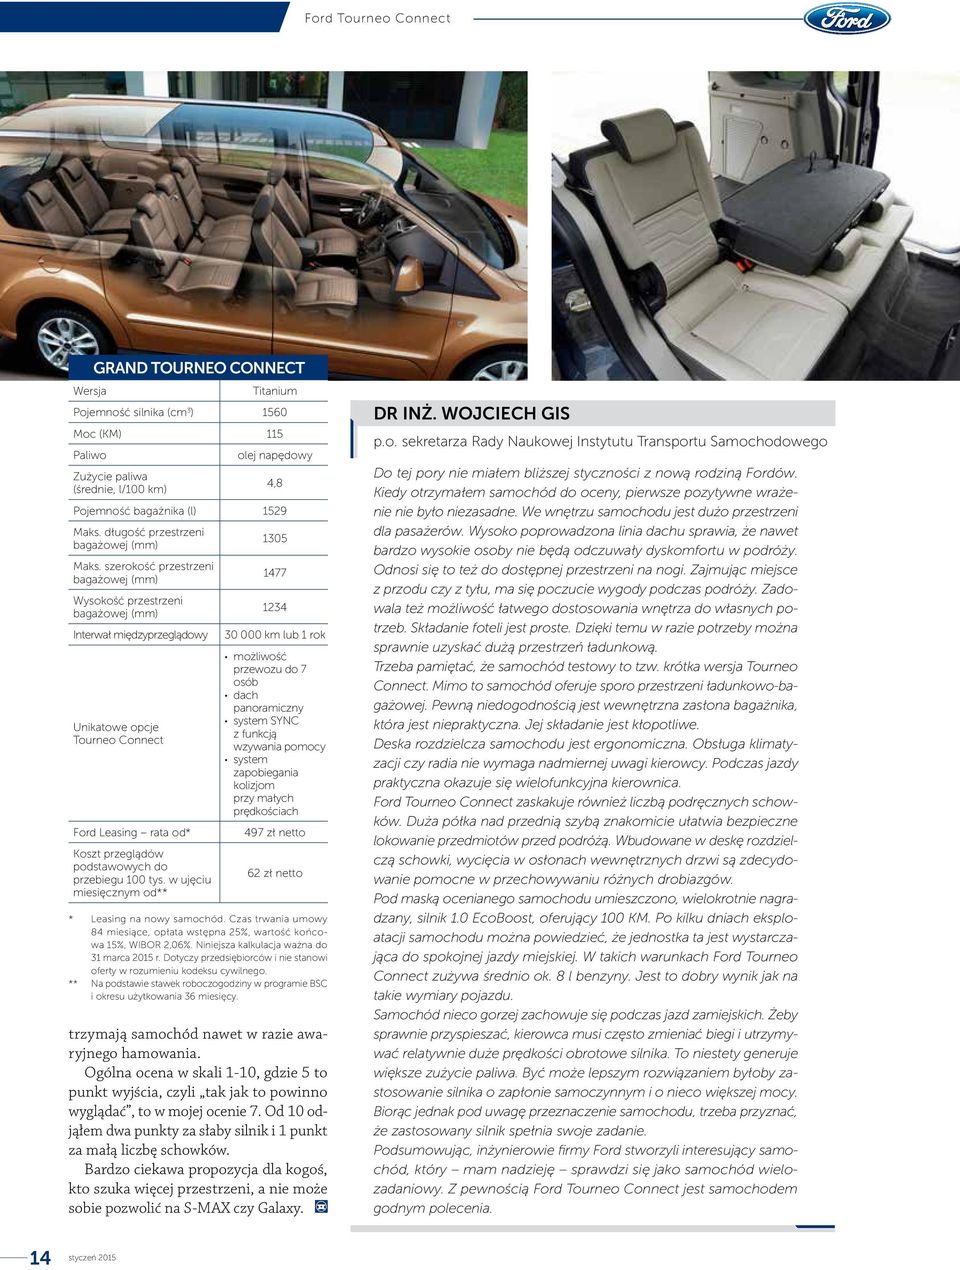 szerokość przestrzeni bagażowej (mm) Wysokość przestrzeni bagażowej (mm) Interwał międzyprzeglądowy Unikatowe opcje Tourneo Connect Ford Leasing rata od* Koszt przeglądów podstawowych do przebiegu